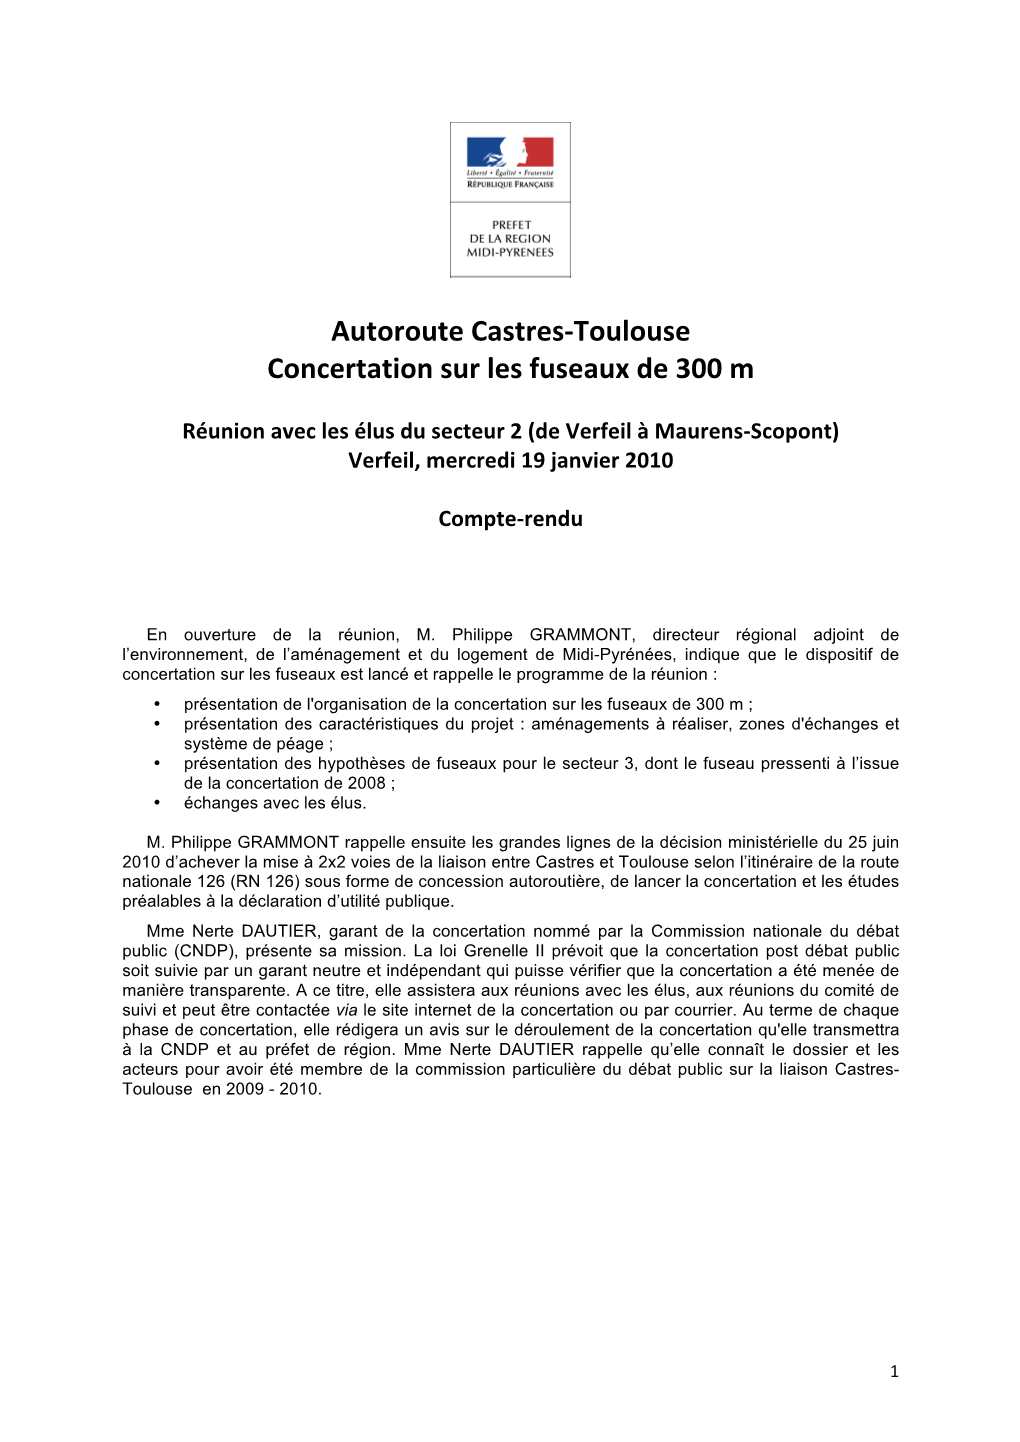 Autoroute Castres-Toulouse Concertation Sur Les Fuseaux De 300 M